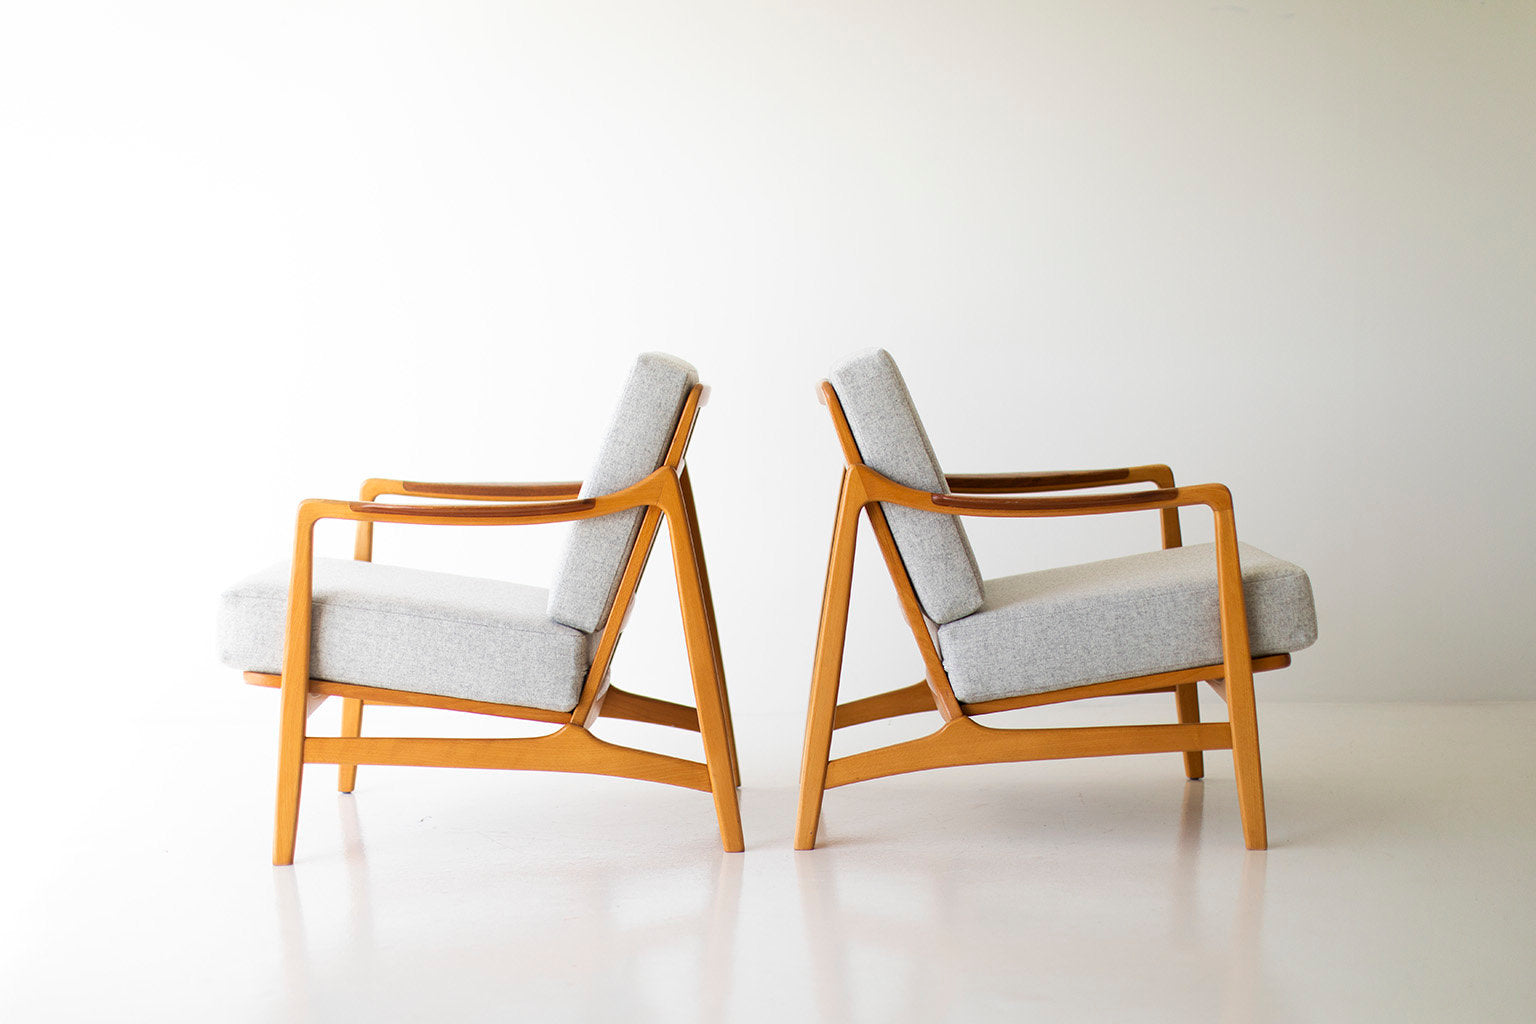 Tove & Edvard Kindt-Larsen Lounge Chairs for France & Daverkosen - 09201804